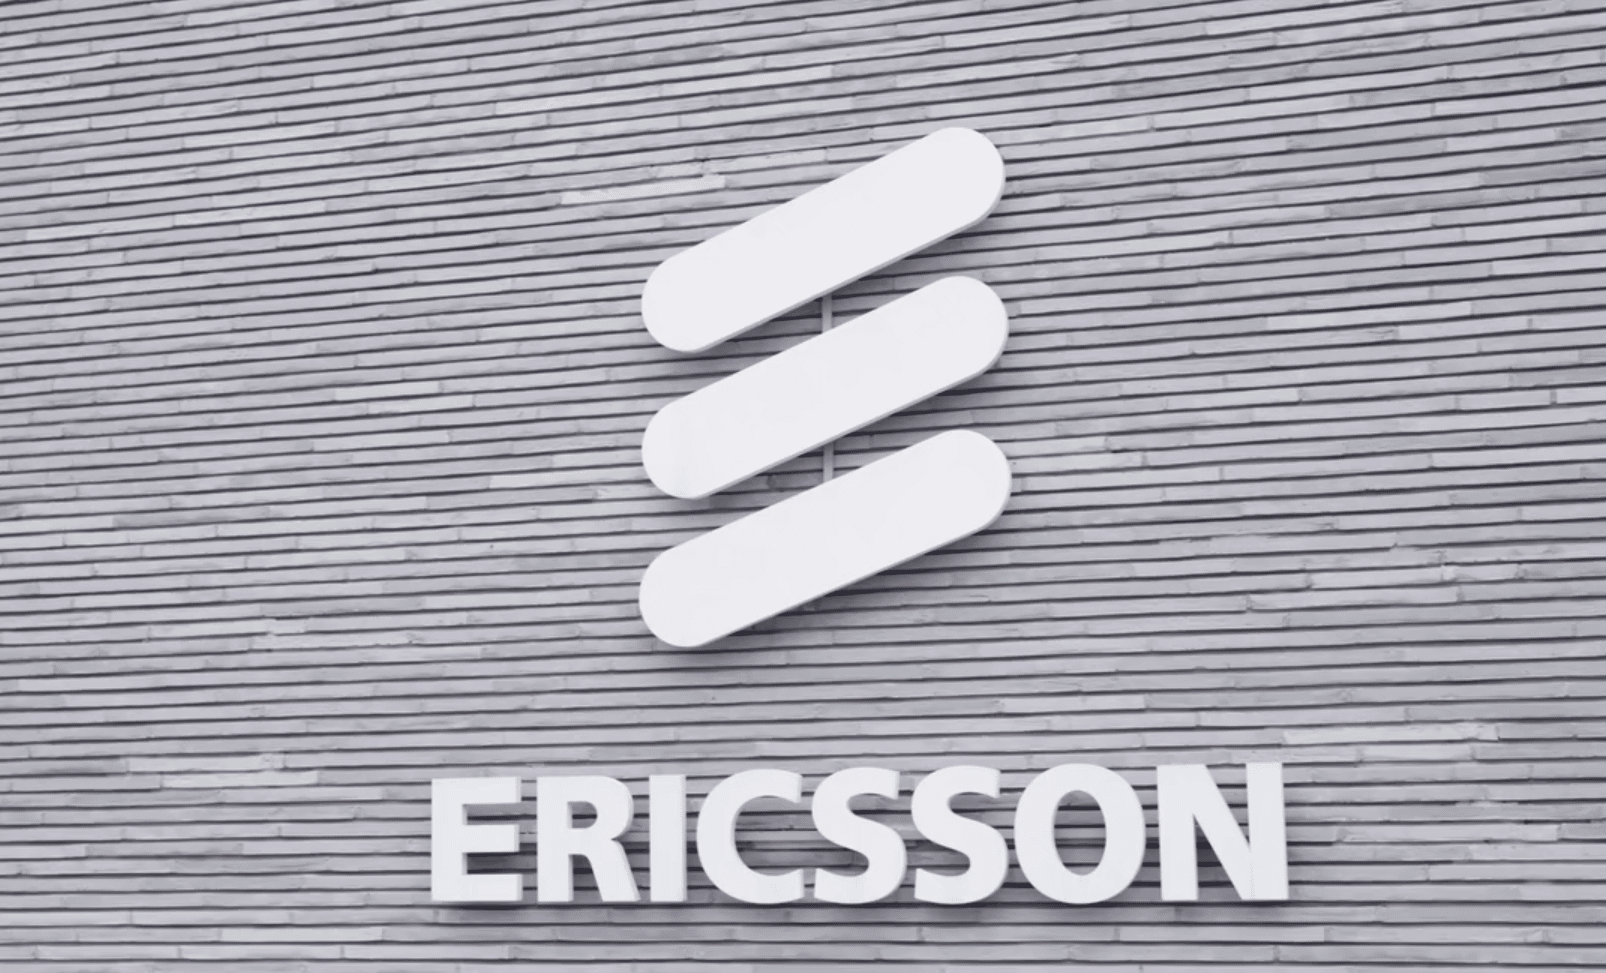 Le logo de l'entreprise Ericsson sur un écriteau